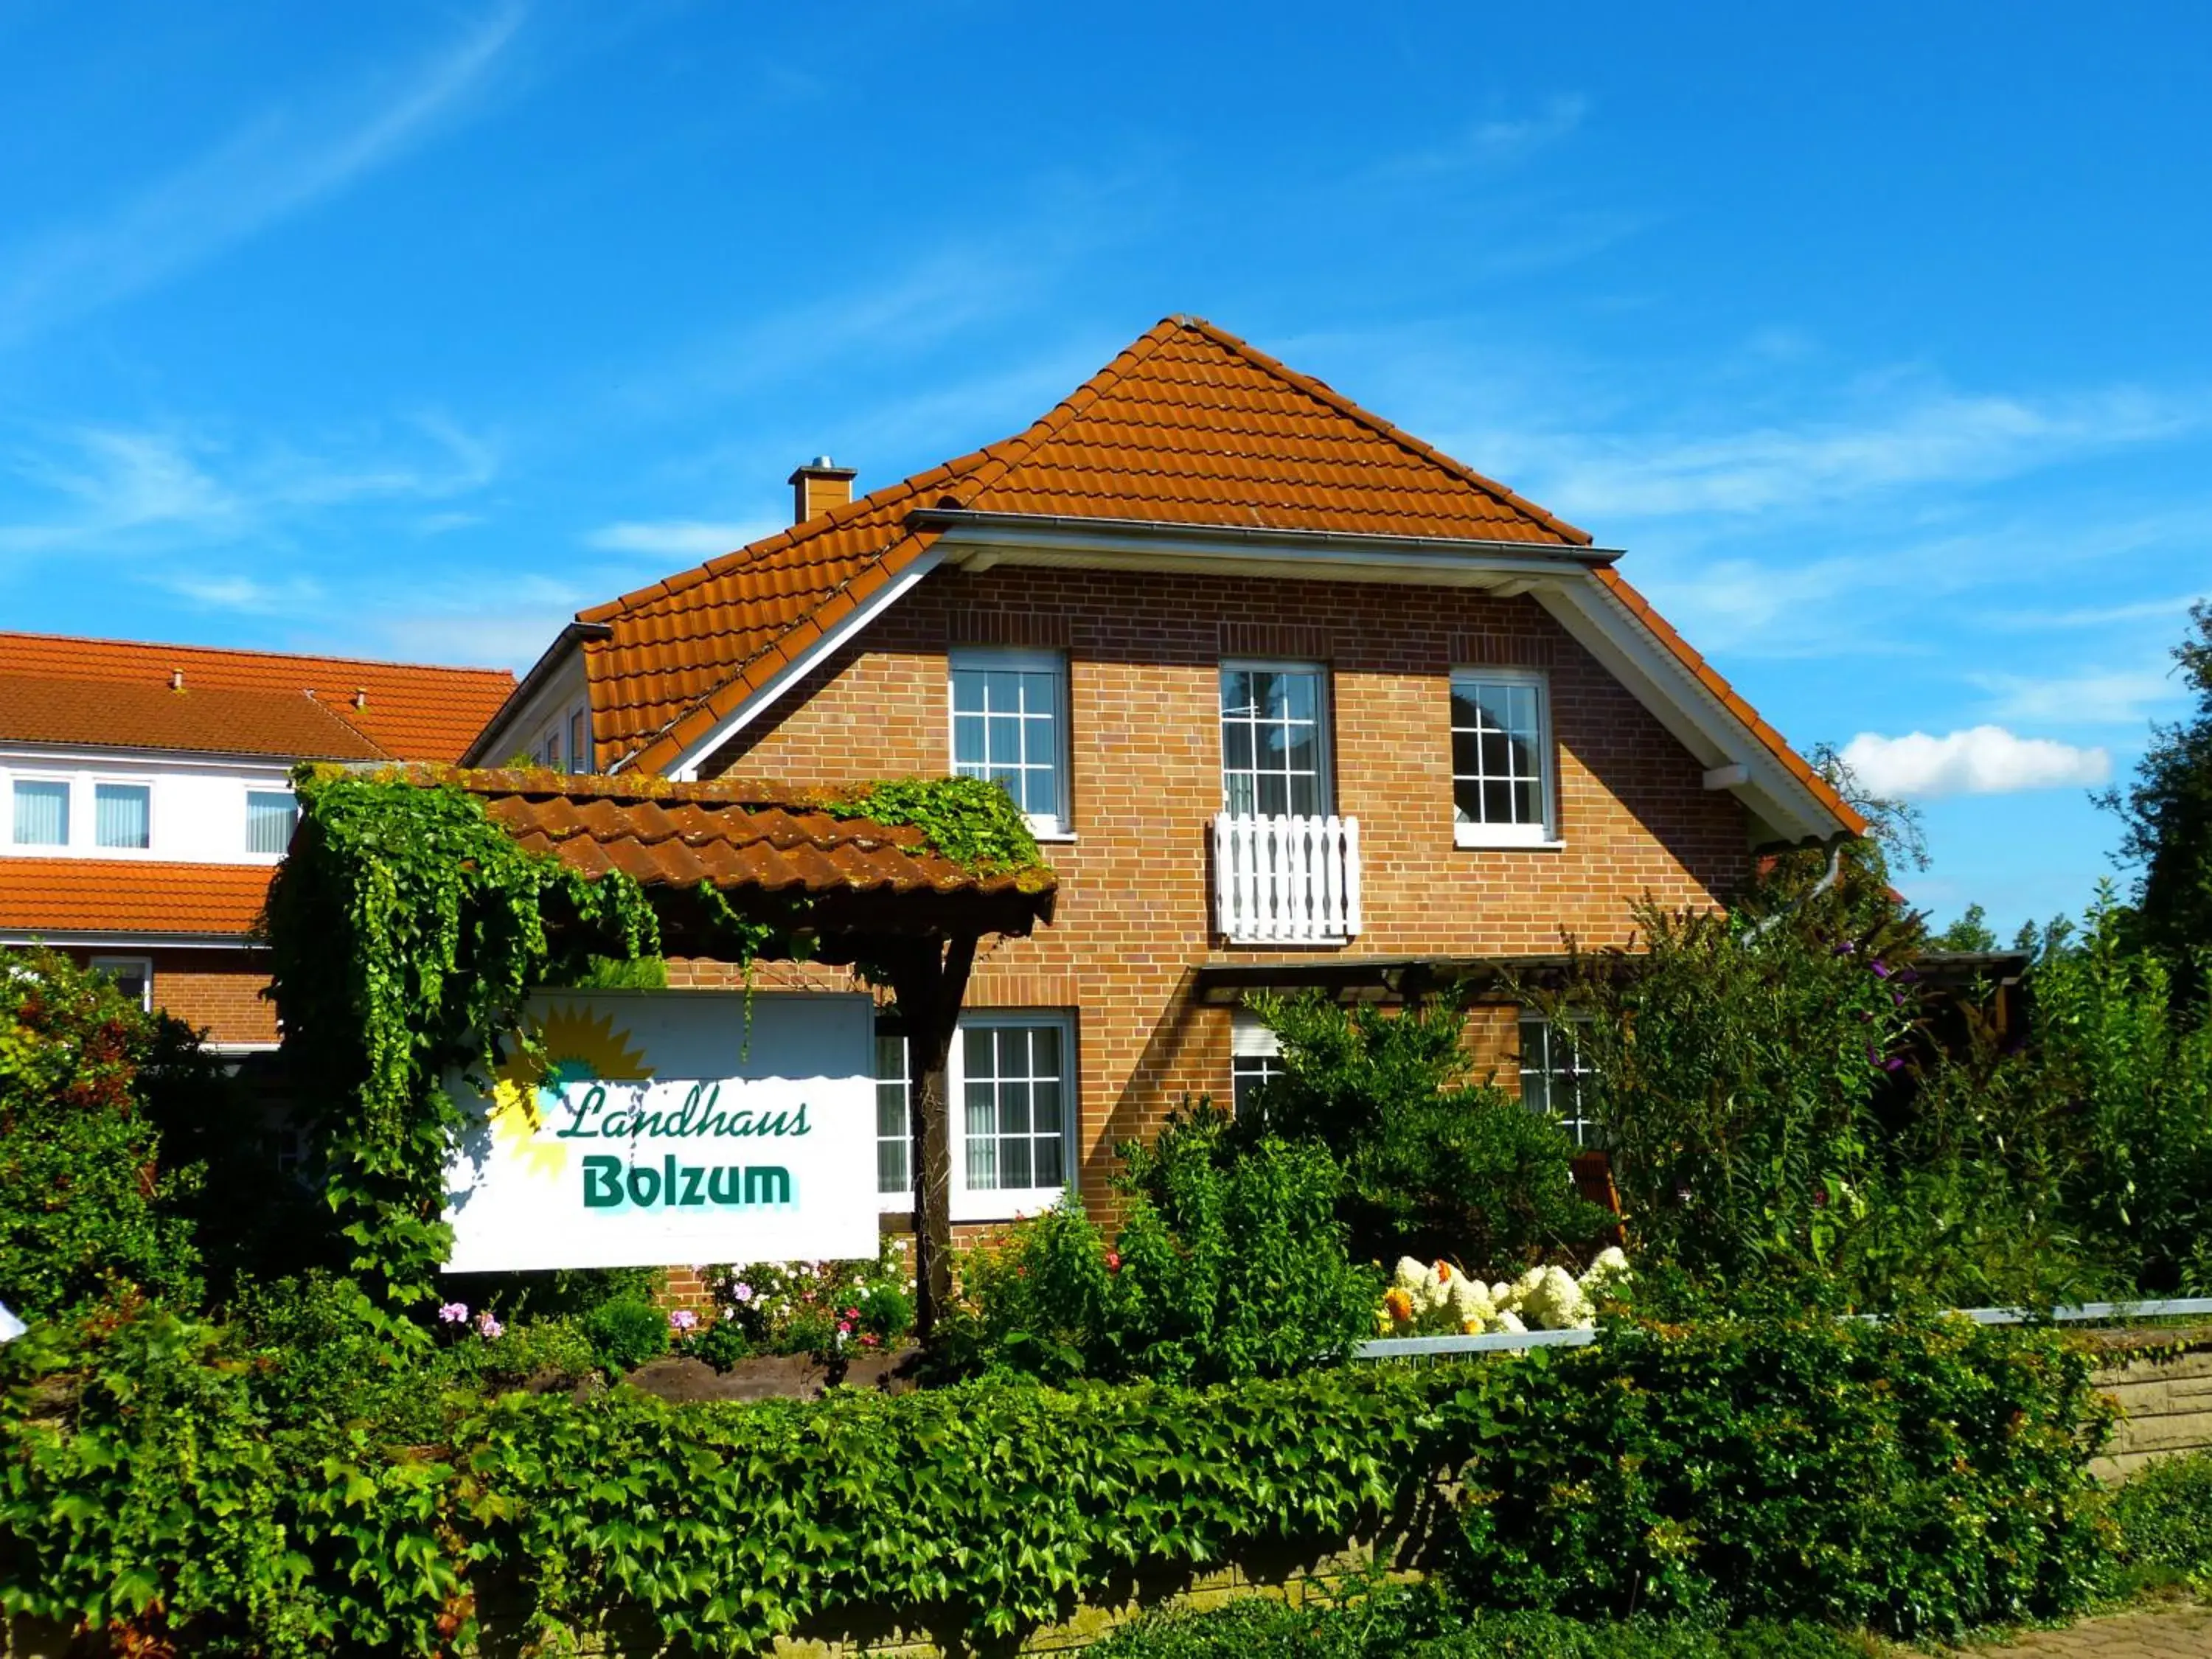 Property building in Landhaus Bolzum